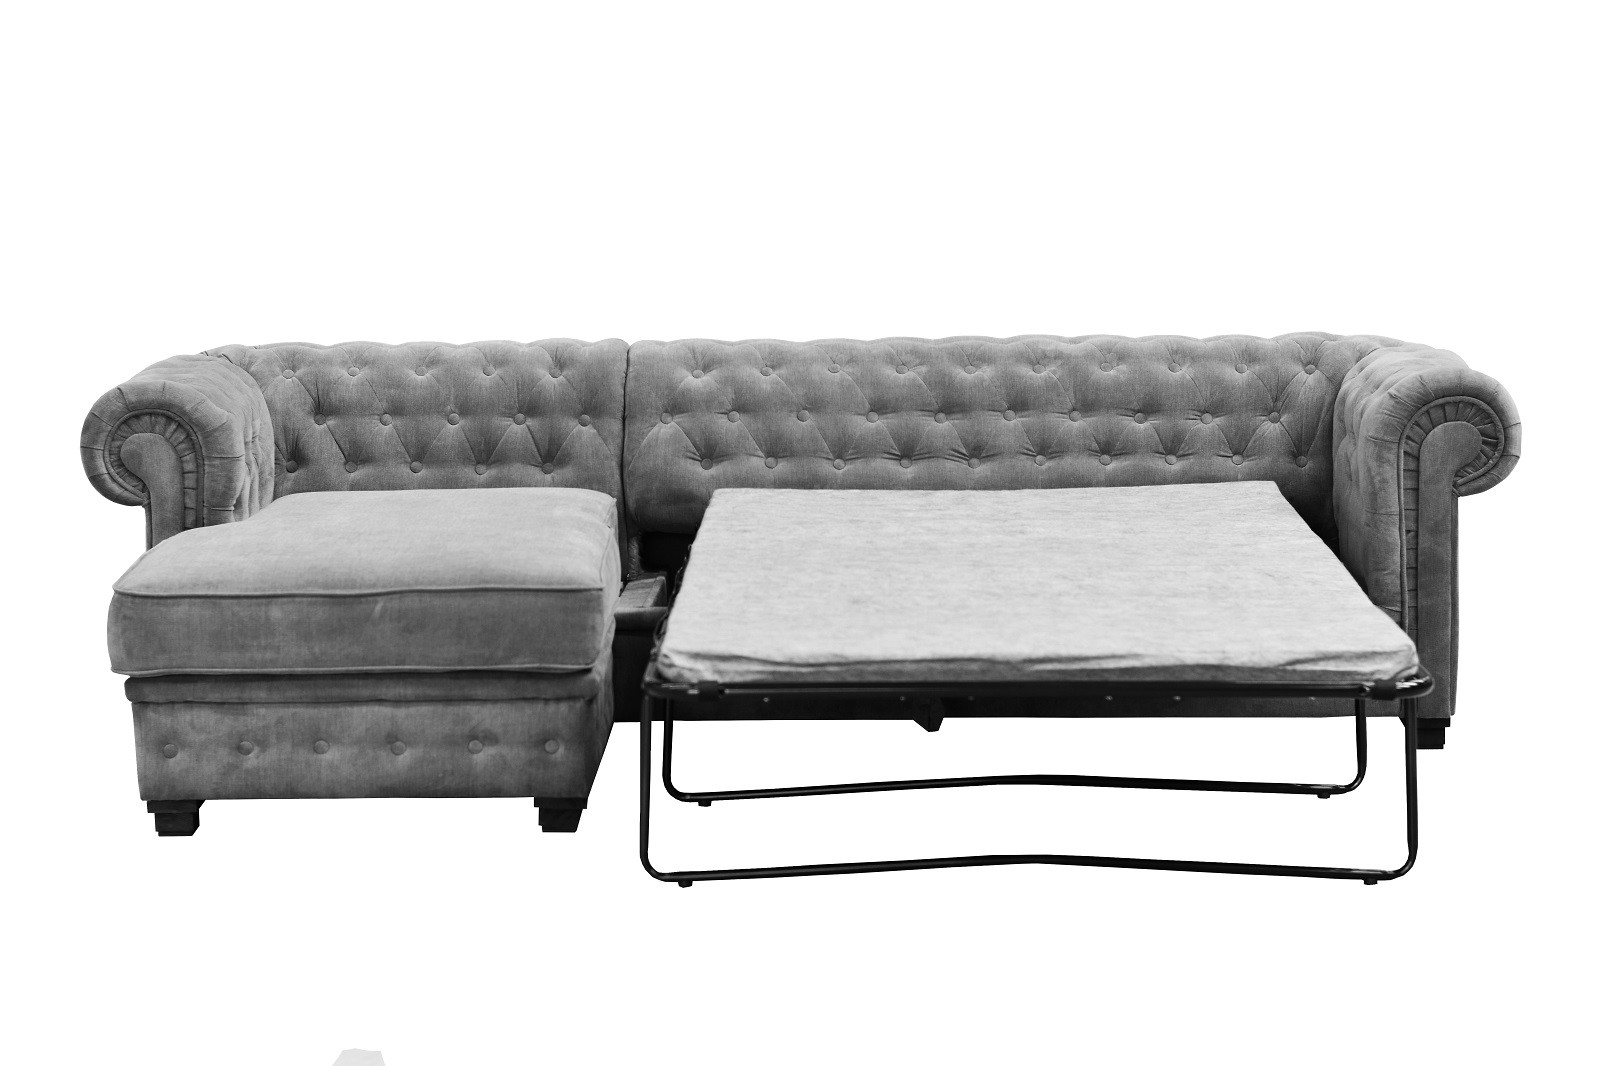 liuda bed and sofa